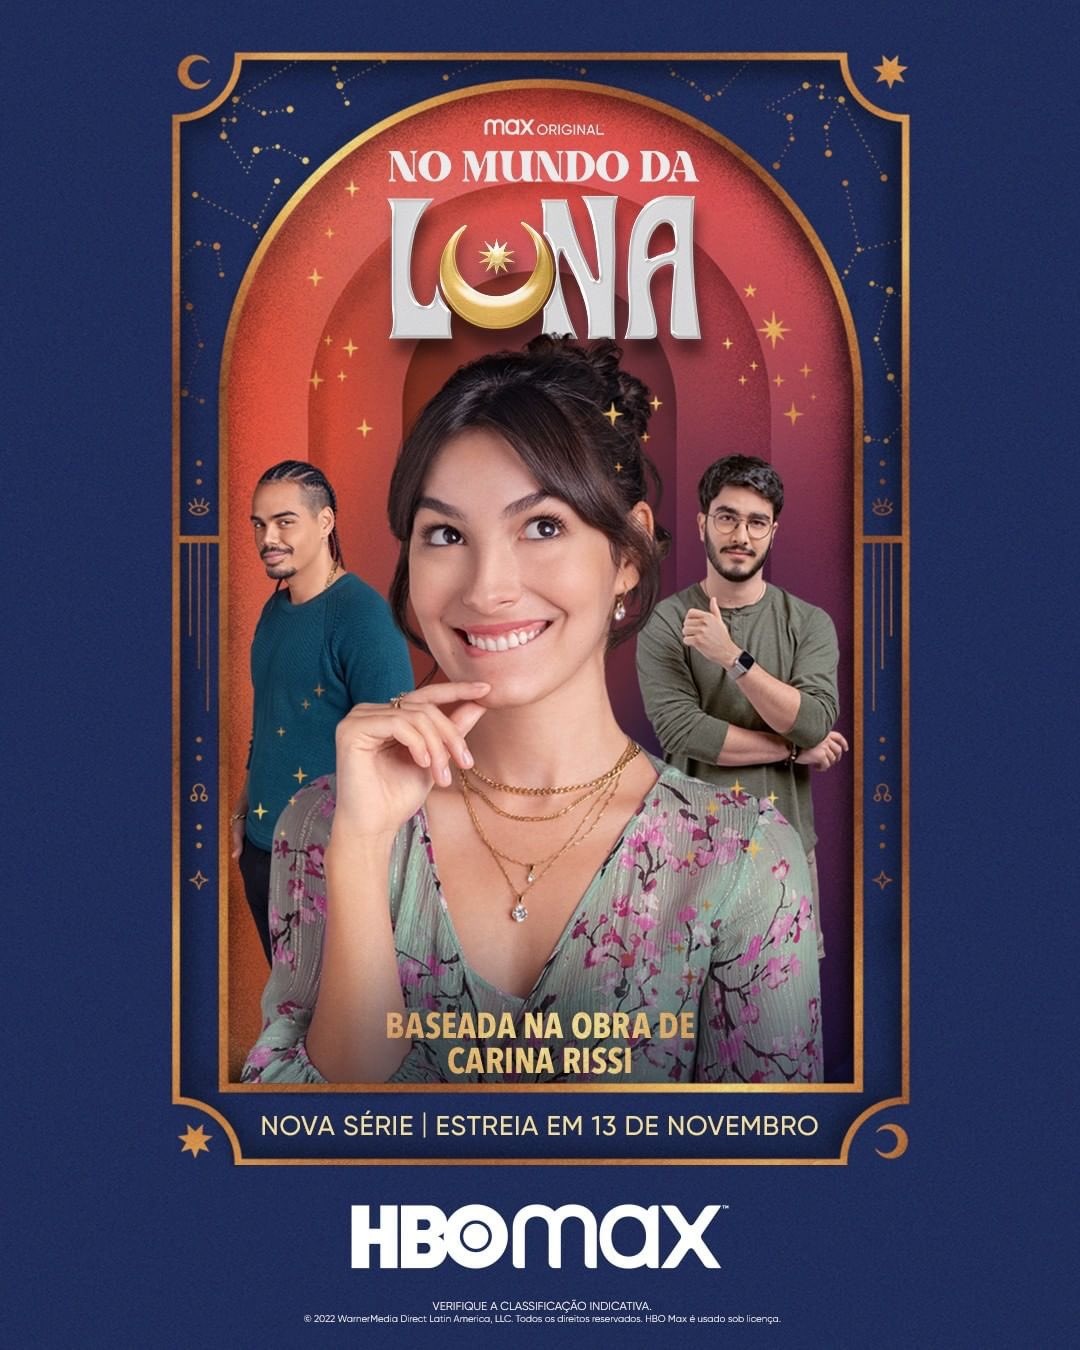 Extra Large TV Poster Image for No Mundo da Luna 